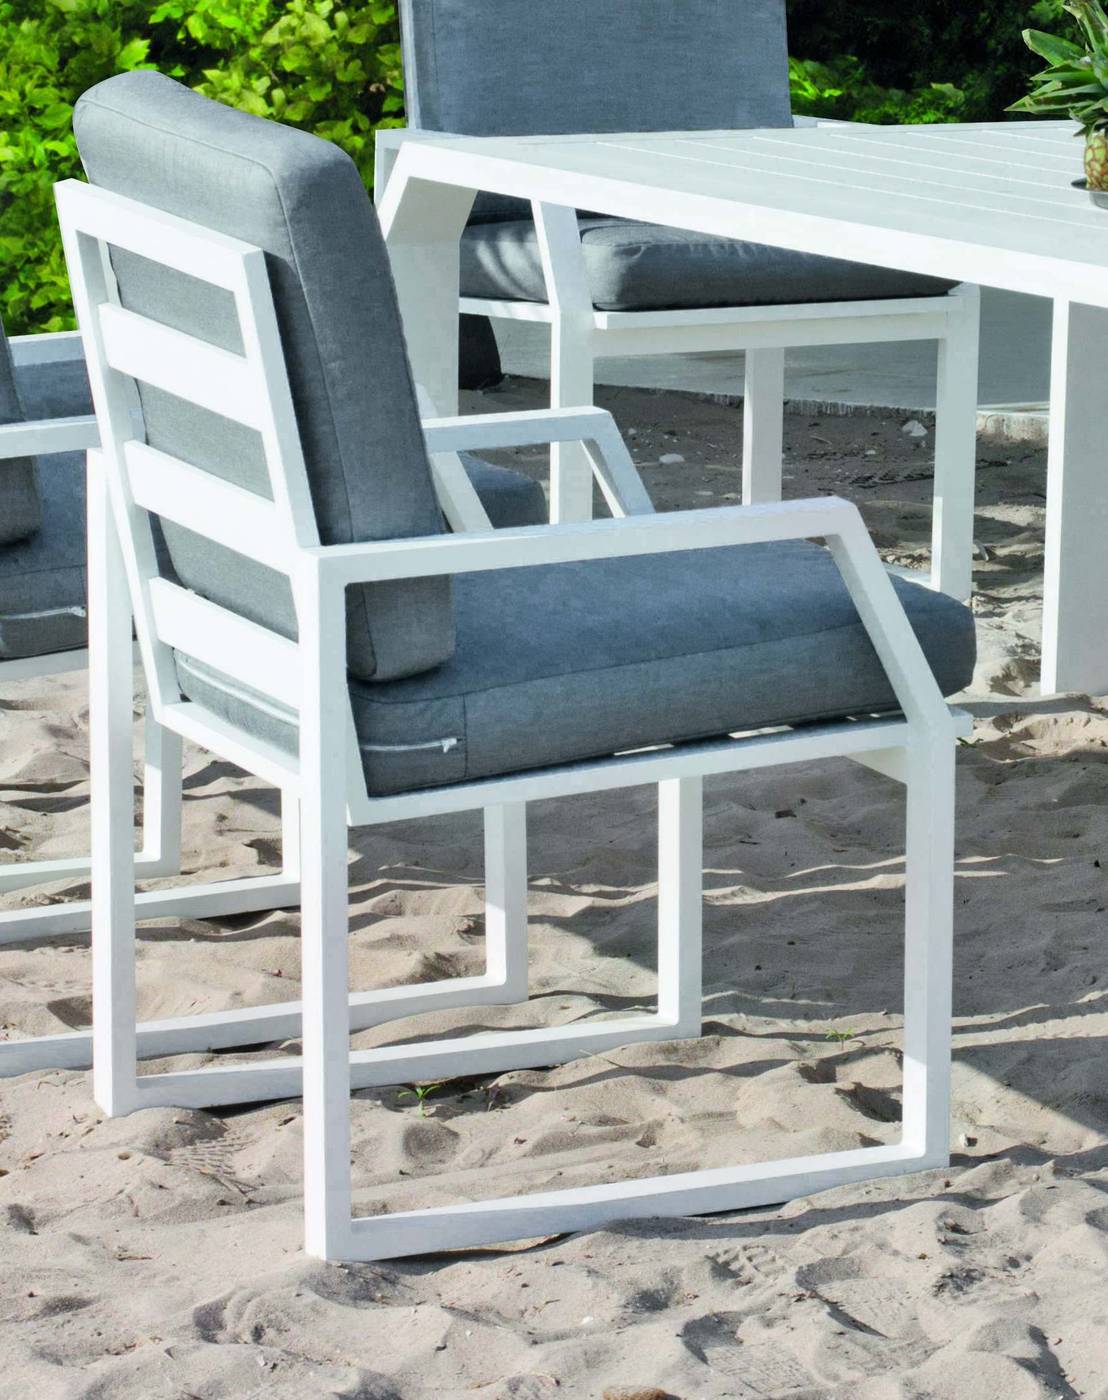 Set Aluminio Copacabana-Zafiro 200-8 - Conjunto de aluminio luxe: Mesa de comedor octogonal extra grande de 200 cm. + 8 sillones + cojines. Disponible en color blanco, antracita y champagne.